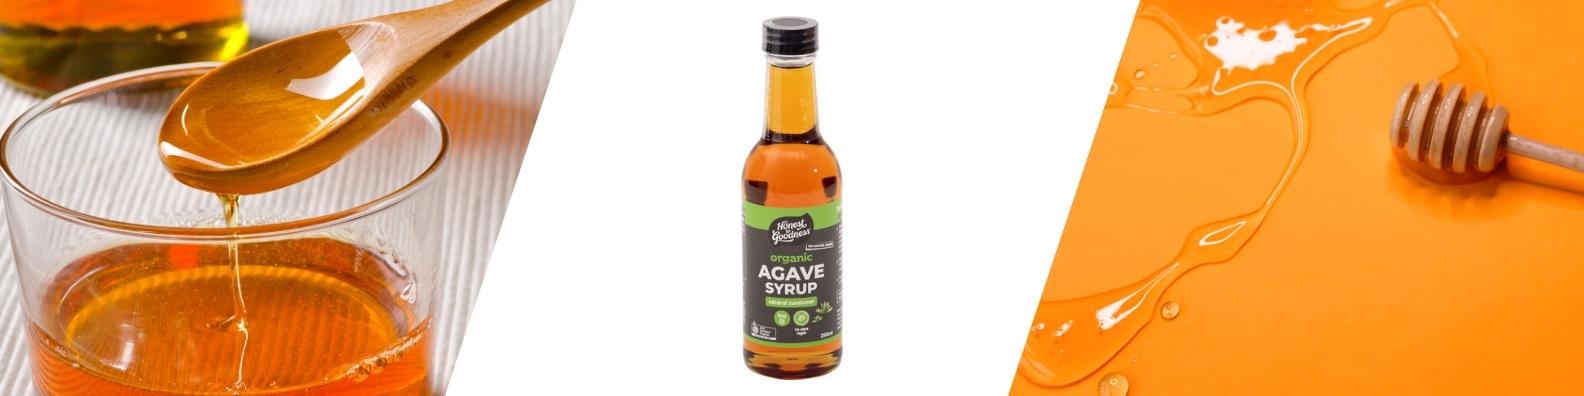 Agave Syrup - Blog Header